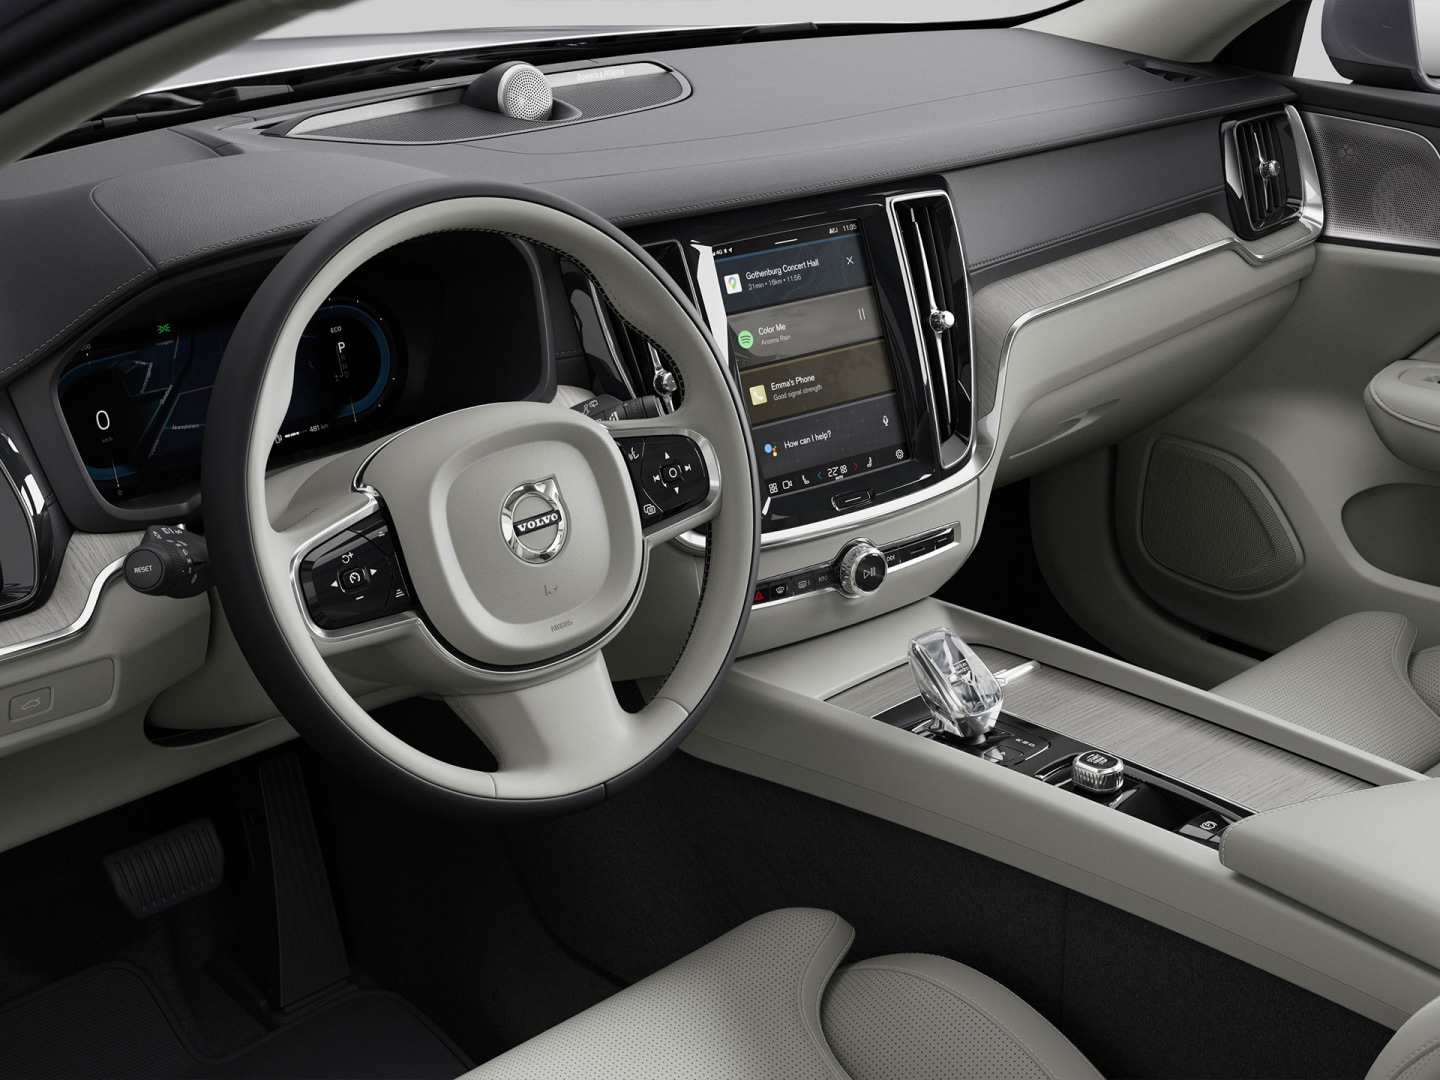 Het stuur, het instrumentenpaneel, de ventilatieroosters en het touchscreen met infotainment van de Volvo V60 mild hybrid gezien vanuit de passagiersstoel.